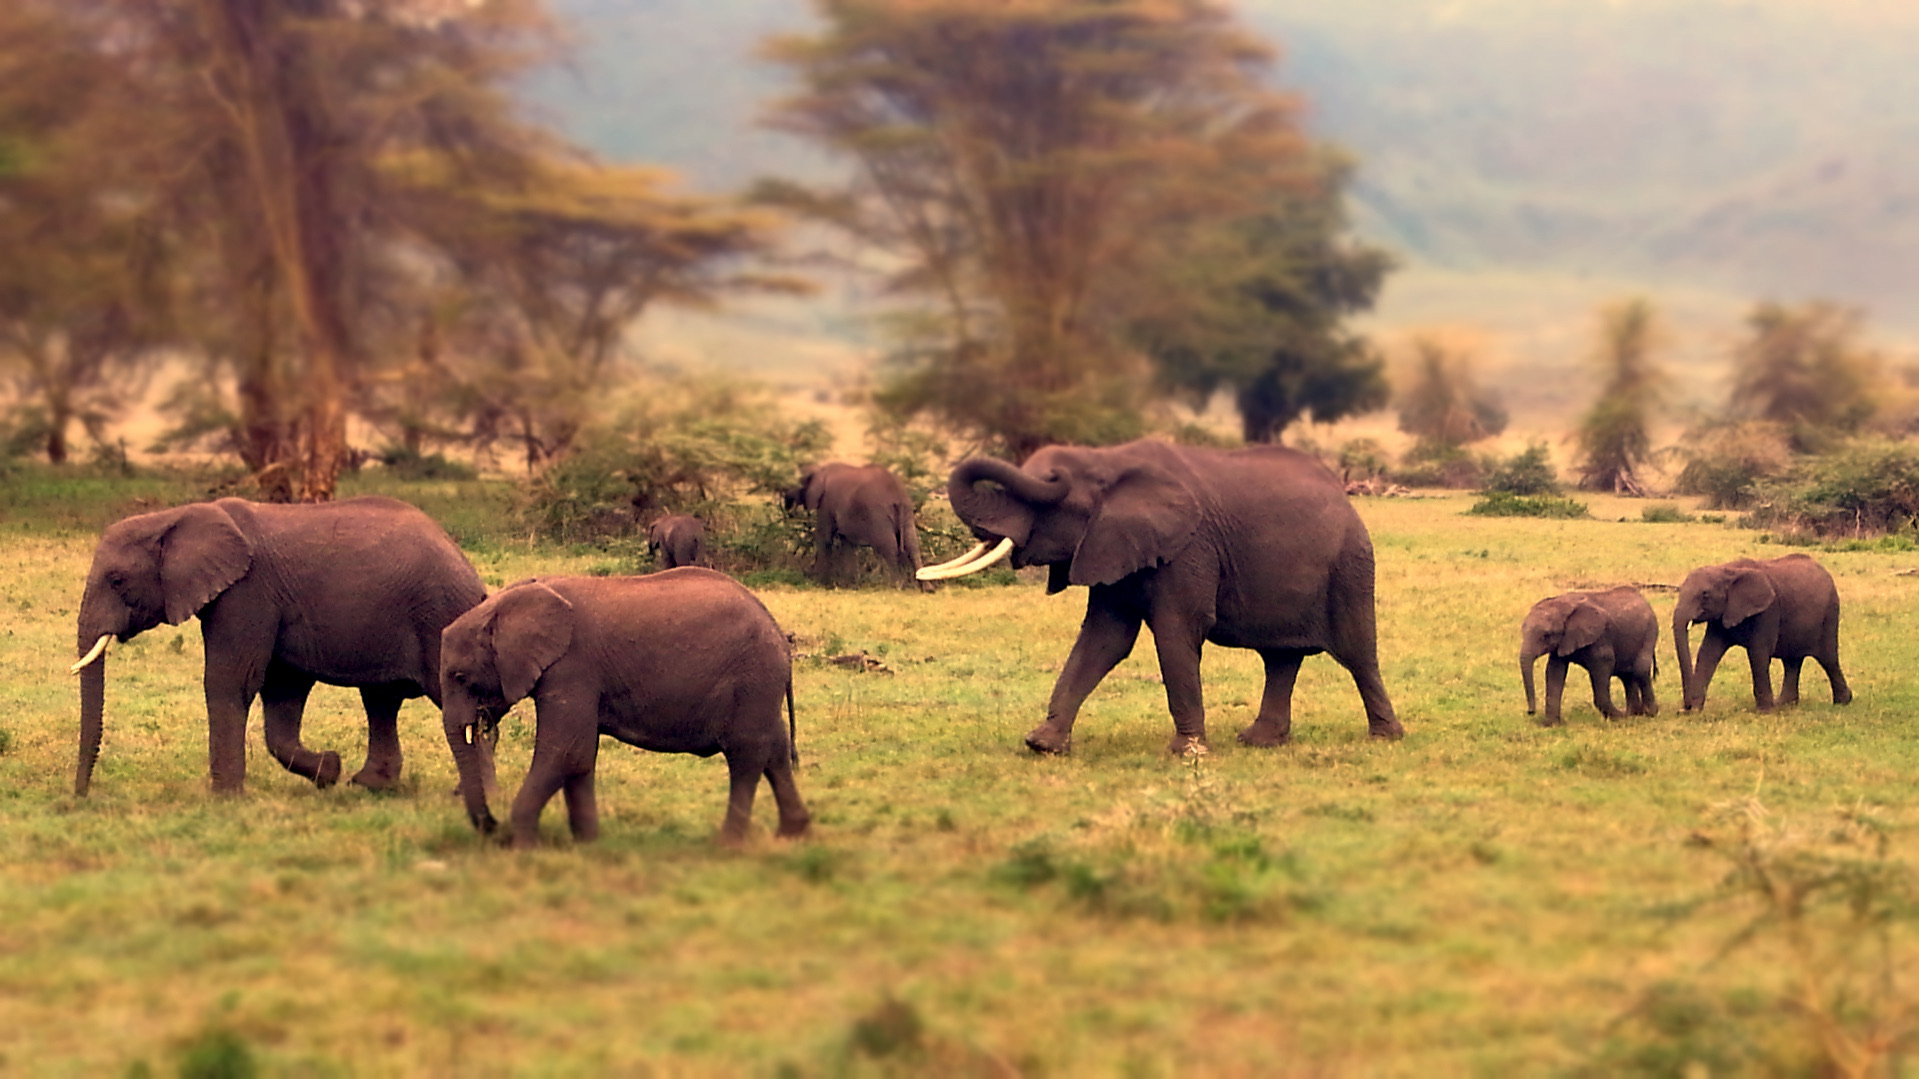 Guided safari tour in Tanzania